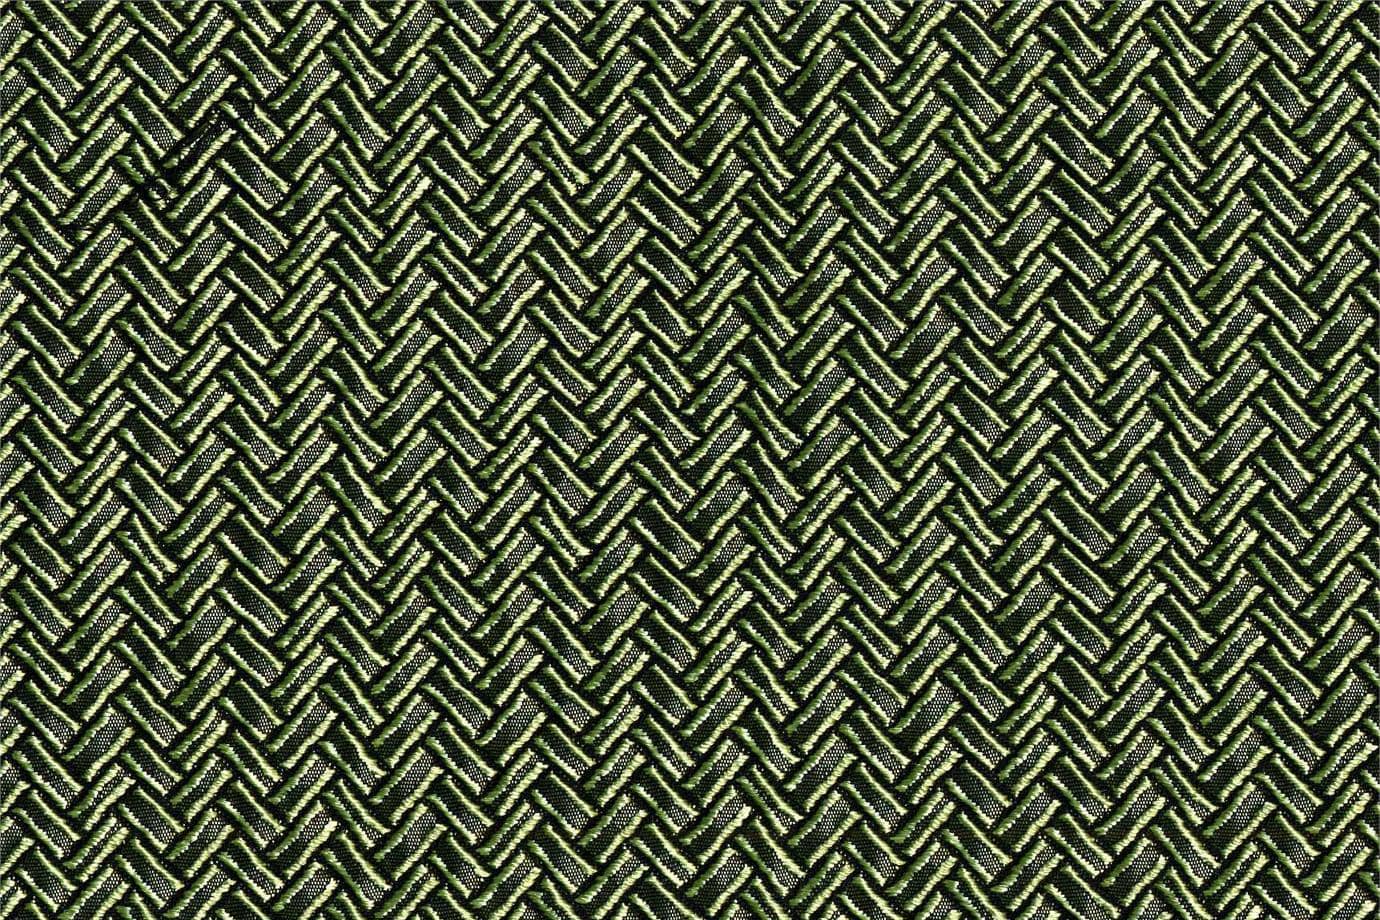 J1951 SECONDIGLIANO 017 Oasi home decoration fabric